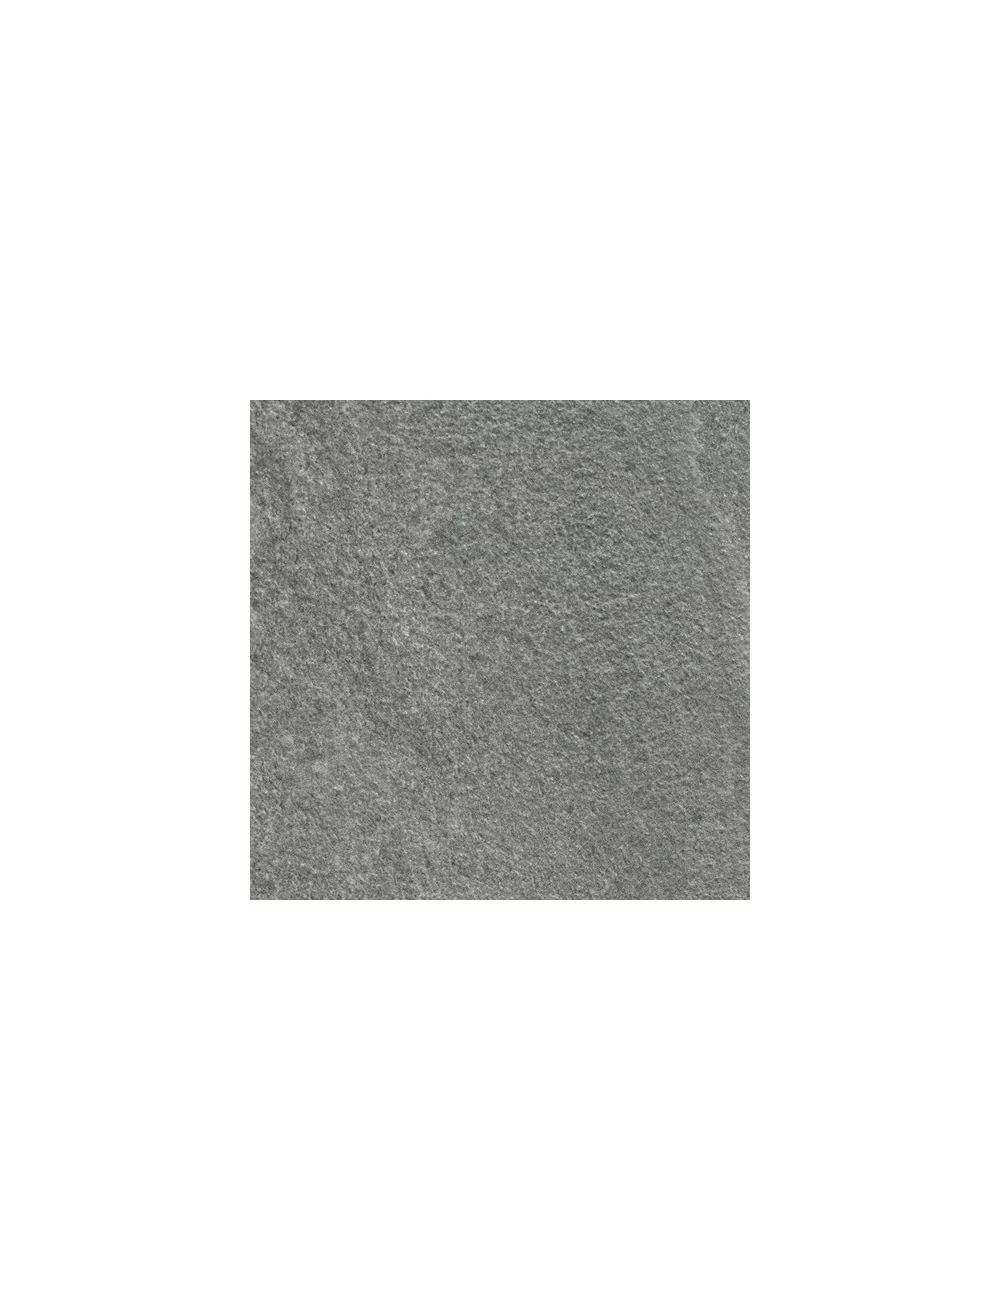 Artica grigio roc rettificato 2 cm